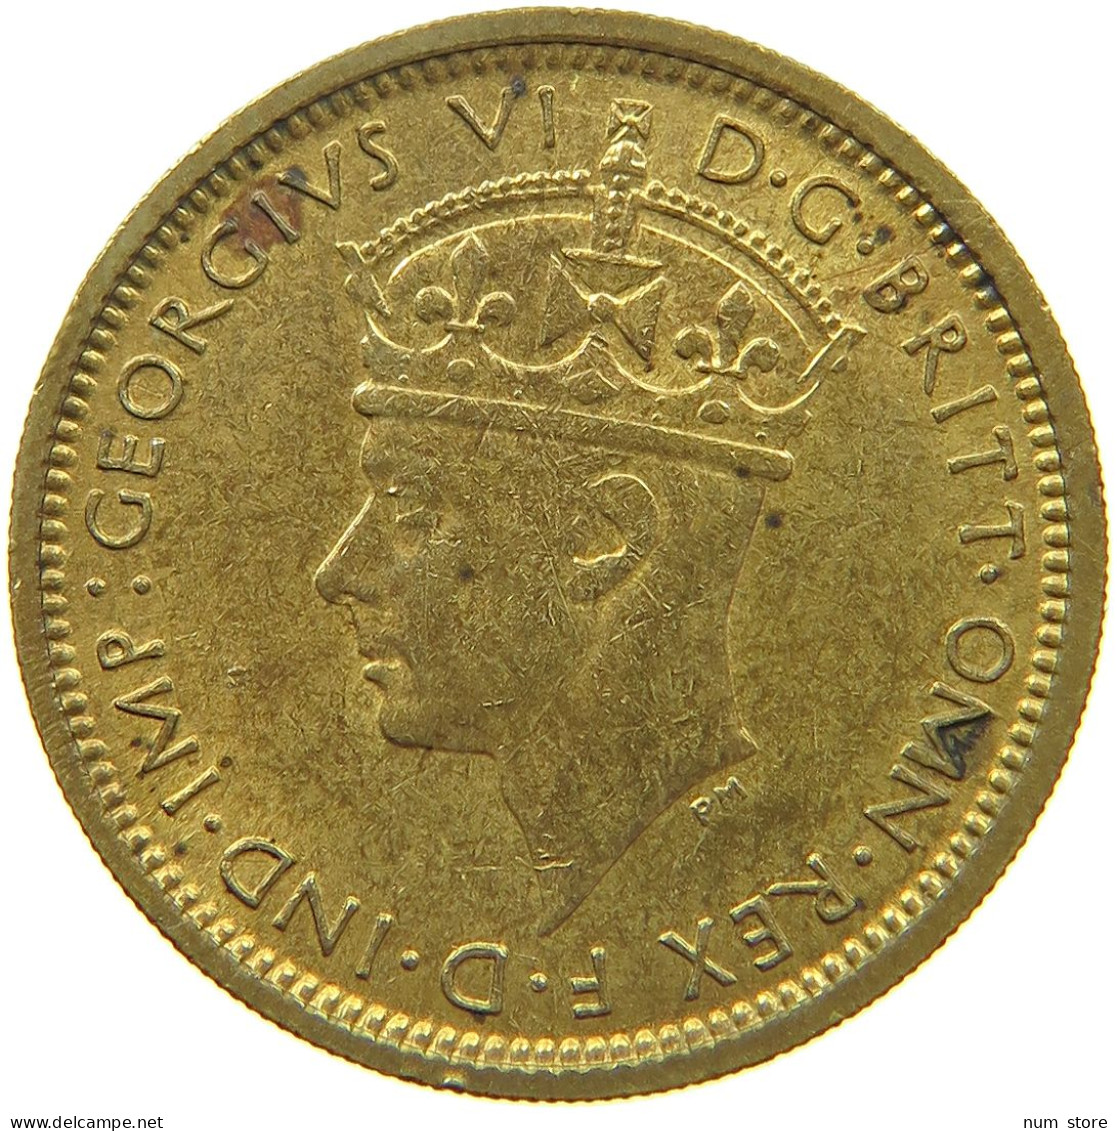 WEST AFRICA 6 PENCE 1942 George VI. (1936-1952) #t152 0023 - Sammlungen